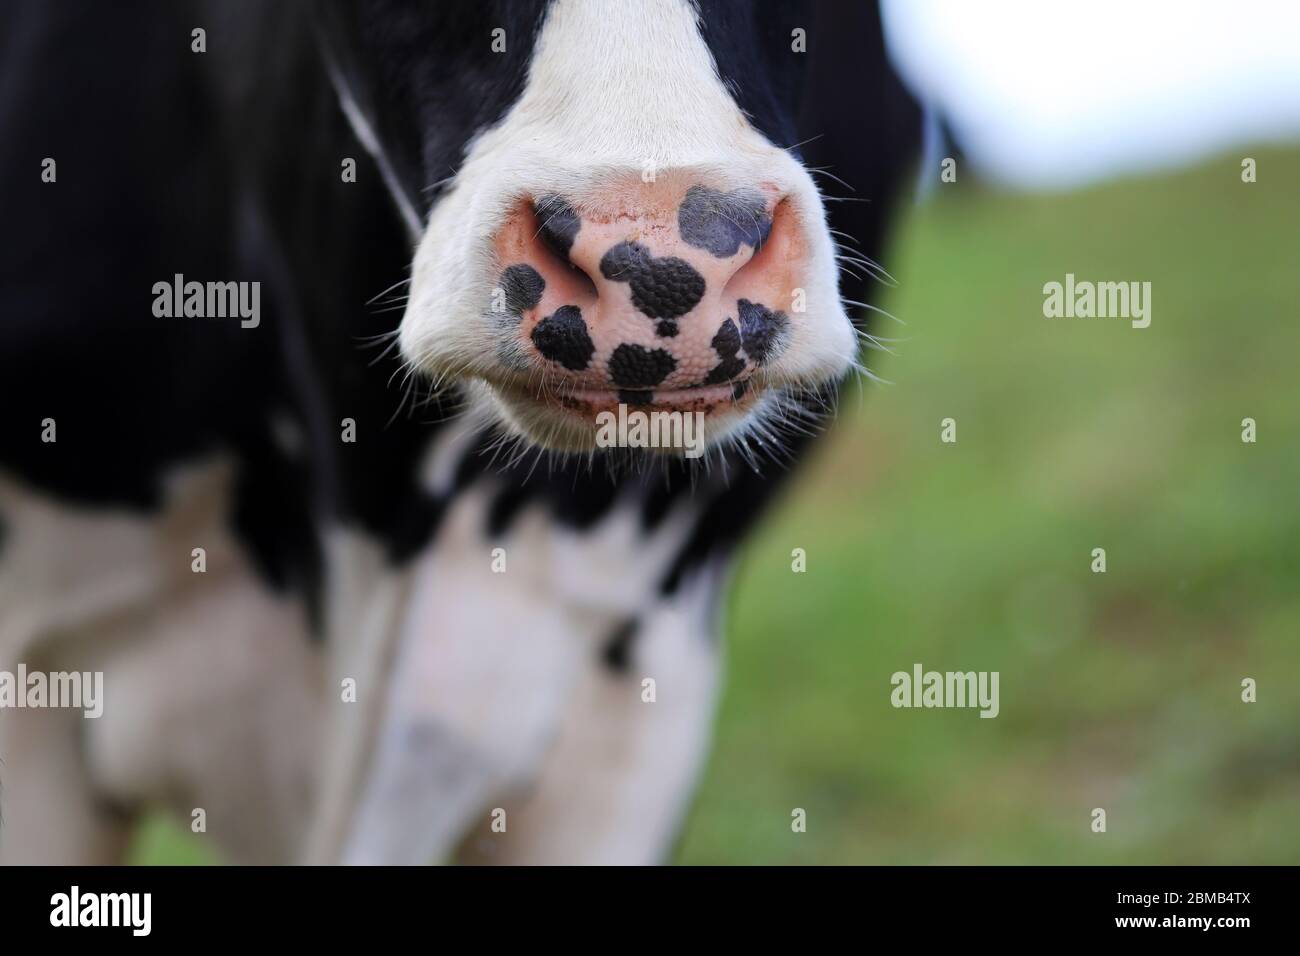 A pigmented cow's nose. São Miguel Island, Azores, Portugal Stock Photo